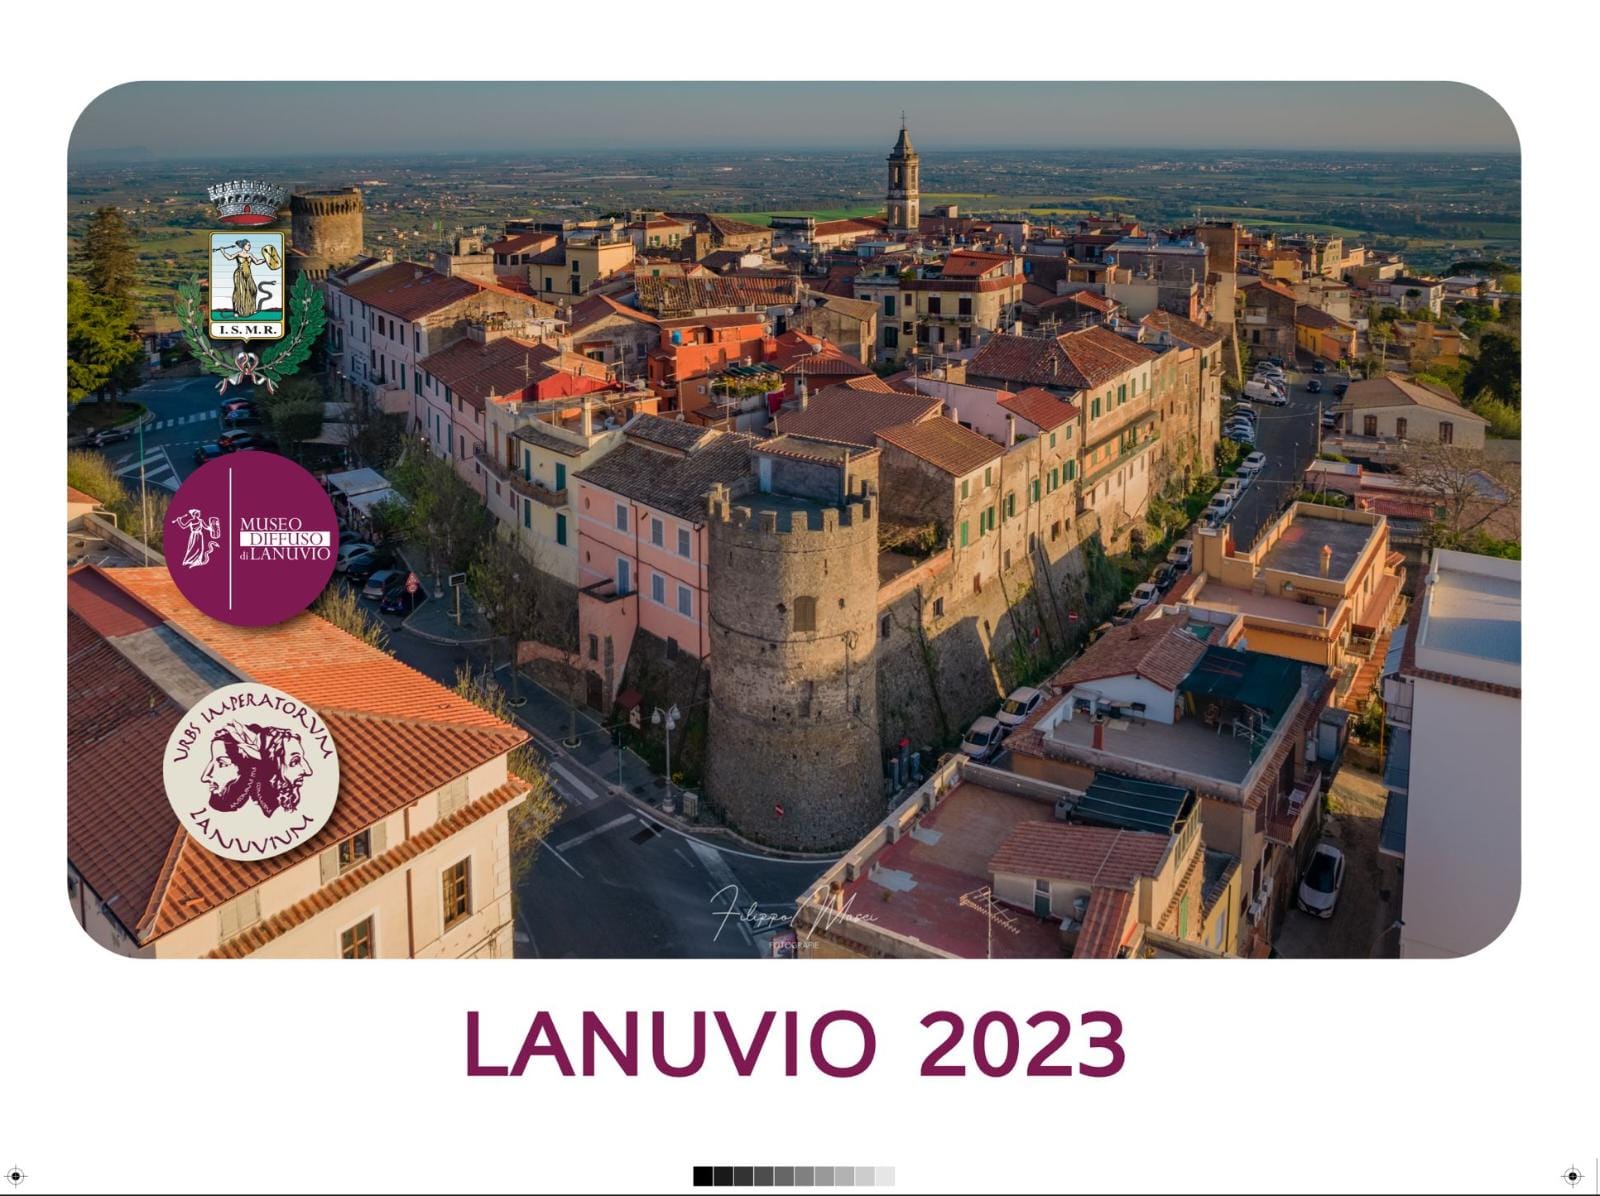 LANUVIO, DE SANTIS: IN ARRIVO IL NUOVO CALENDARIO 2023.